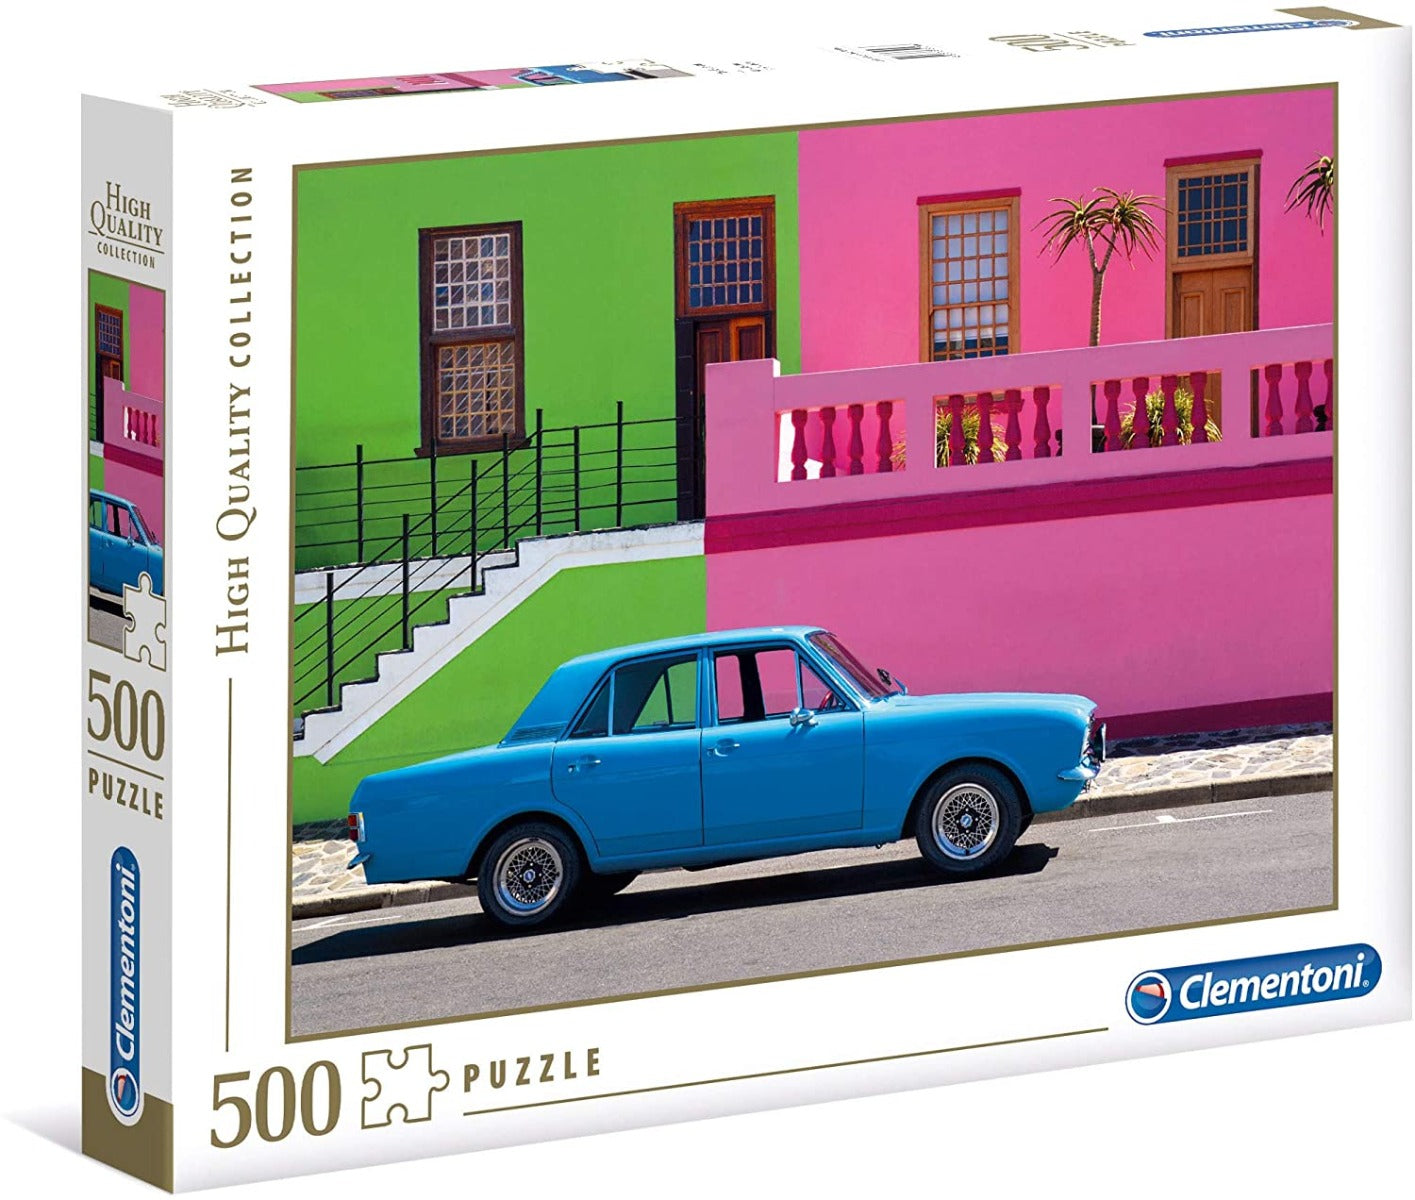 Clementoni - The Blue Car - 500 Piece Jigsaw Puzzle